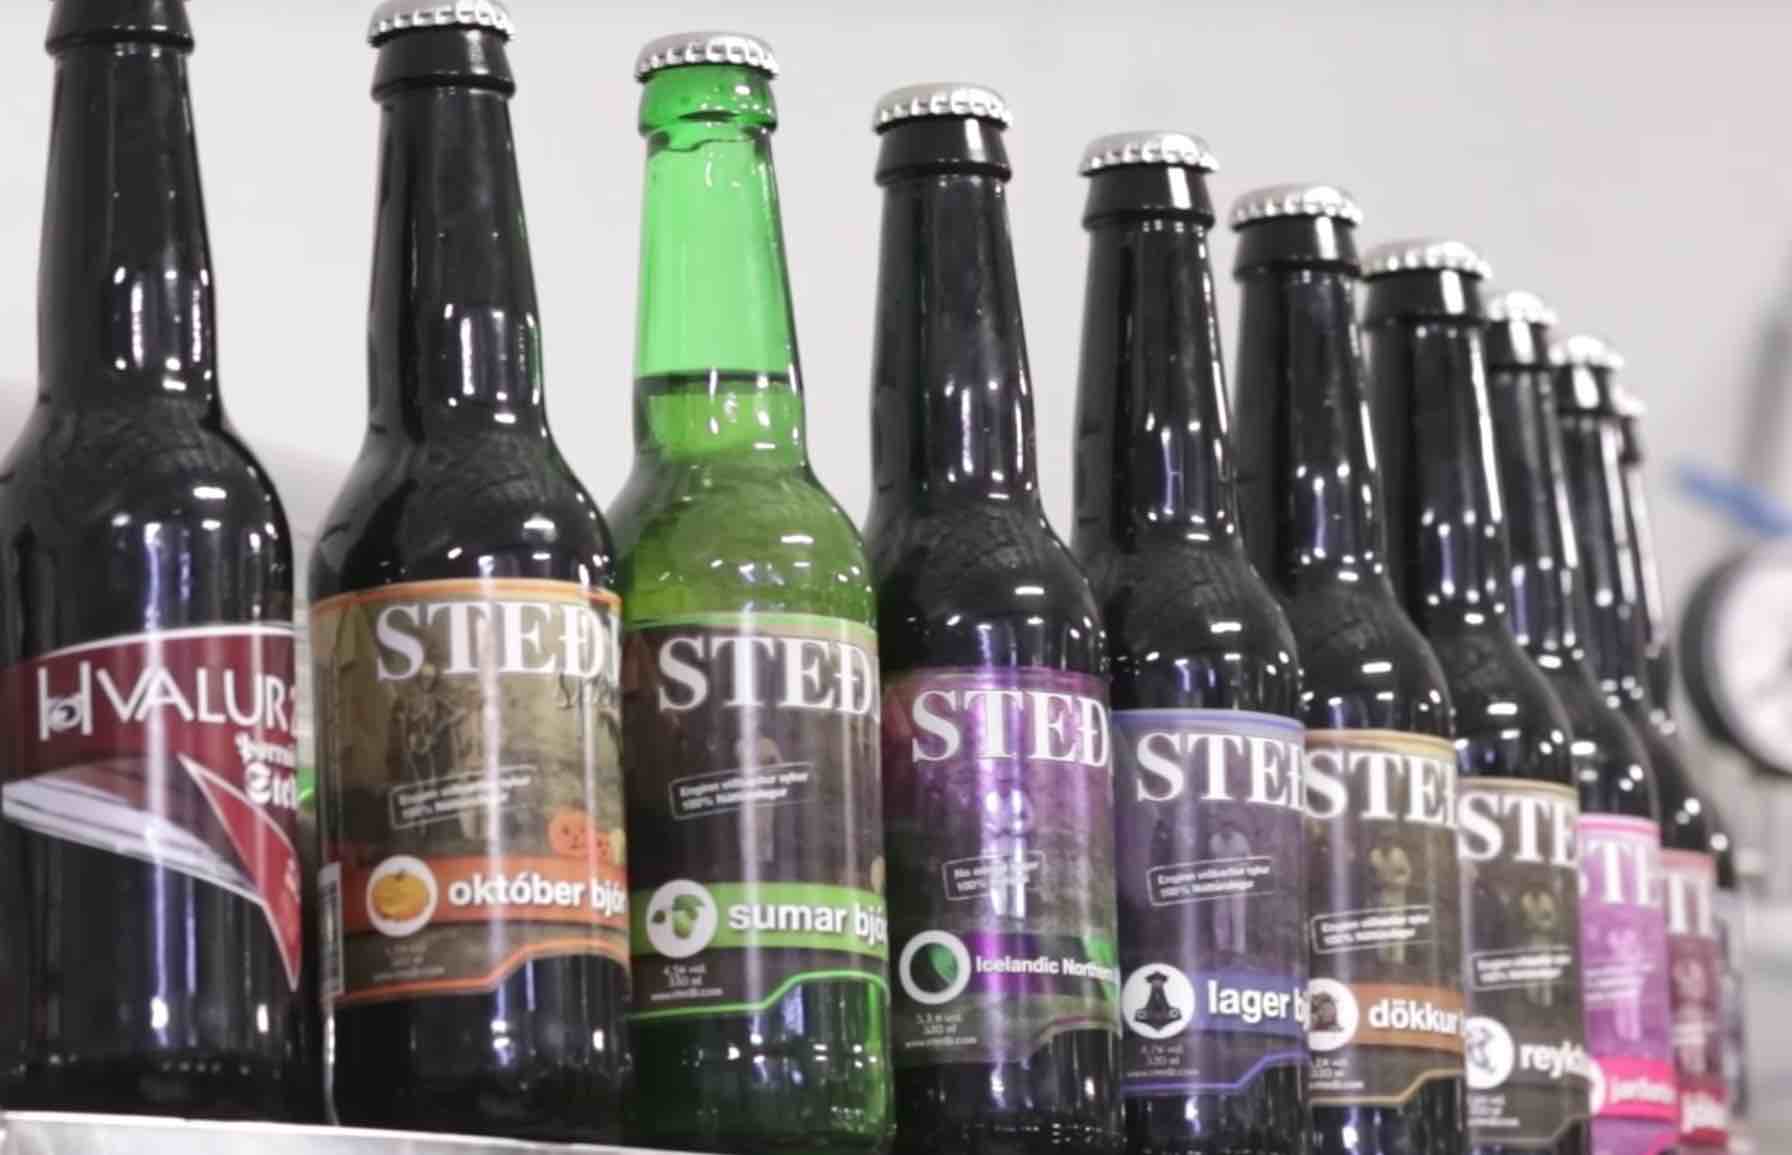 testicle flavored beer bottles